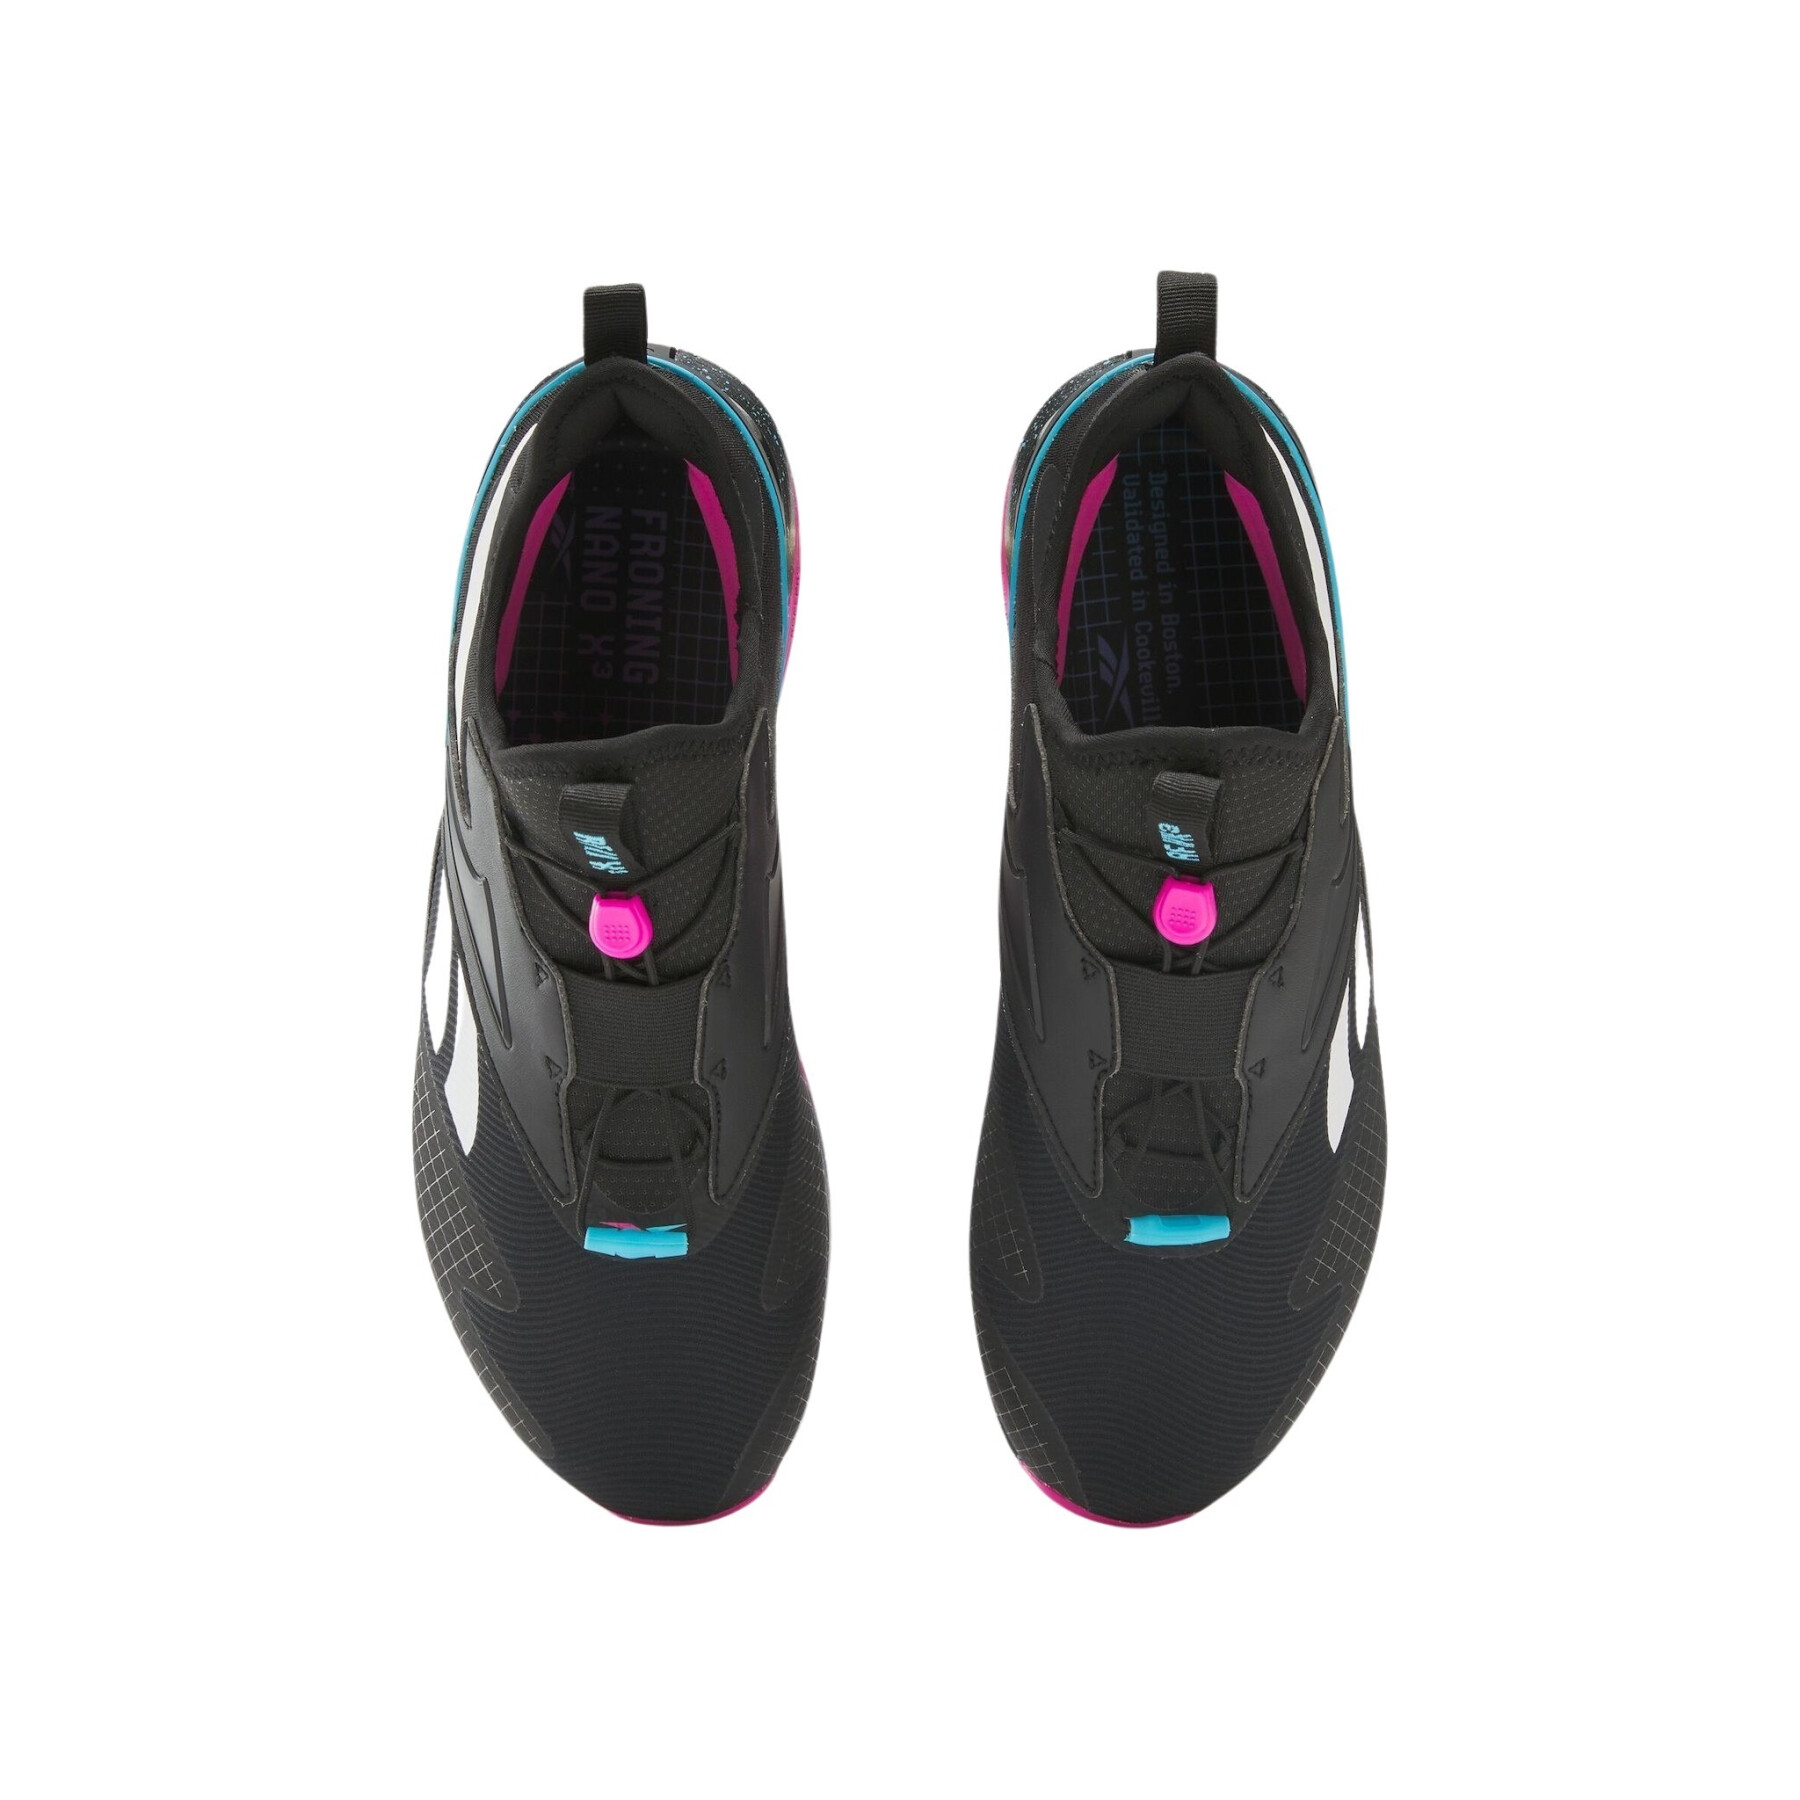 Chaussures de cross training Reebok Nano X3 Froning